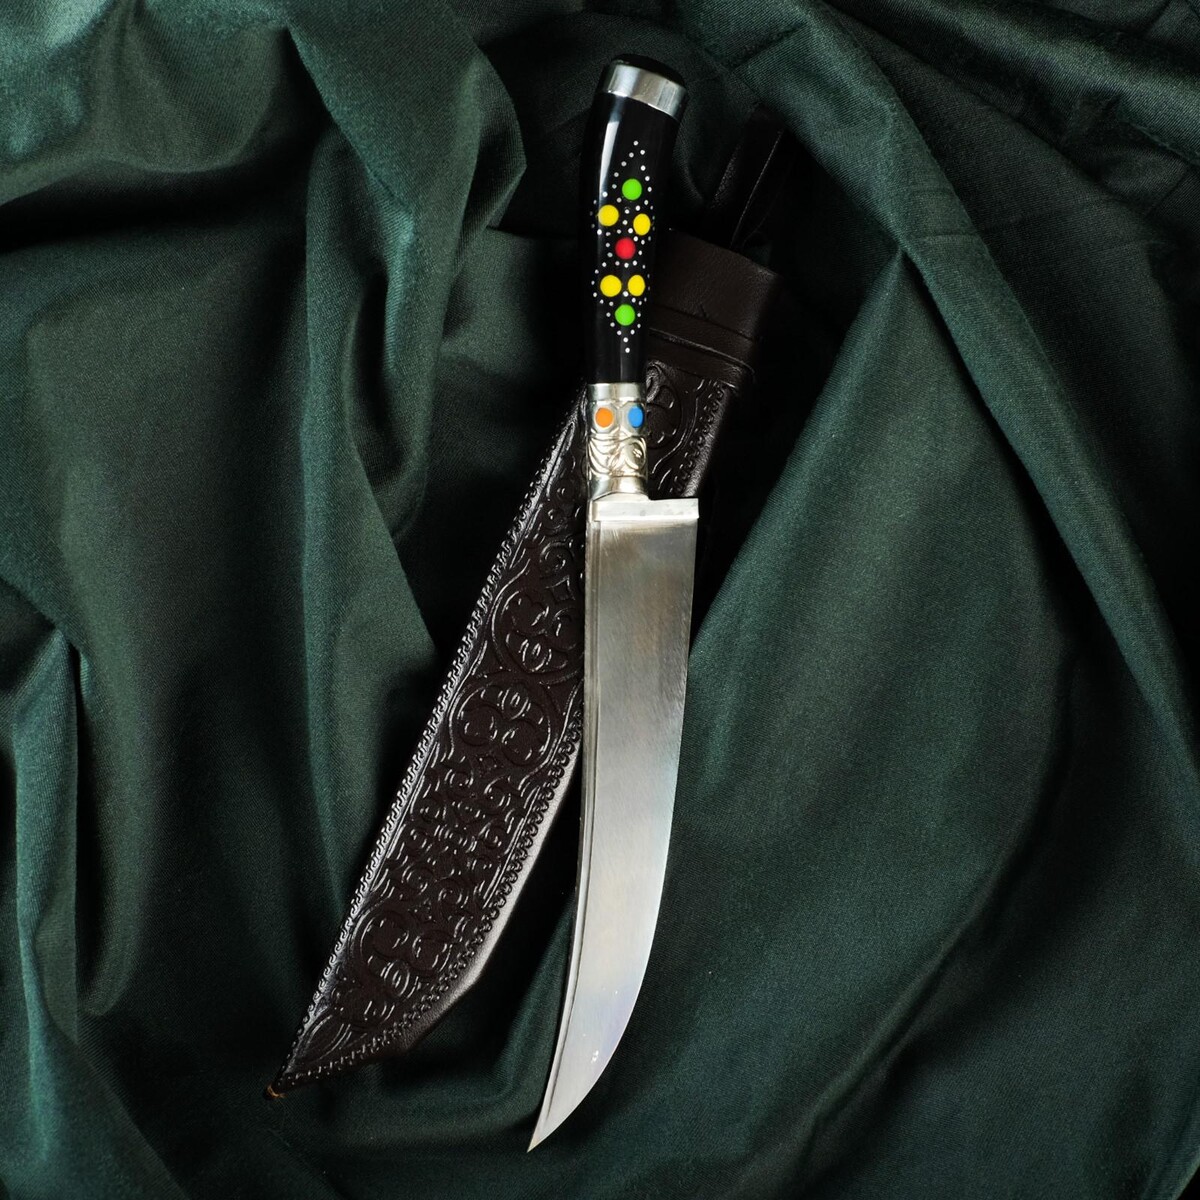 Нож пчак шархон - эбонит, ерма, гарда, навершие мельхиор, 17 см Шафран, цвет черный